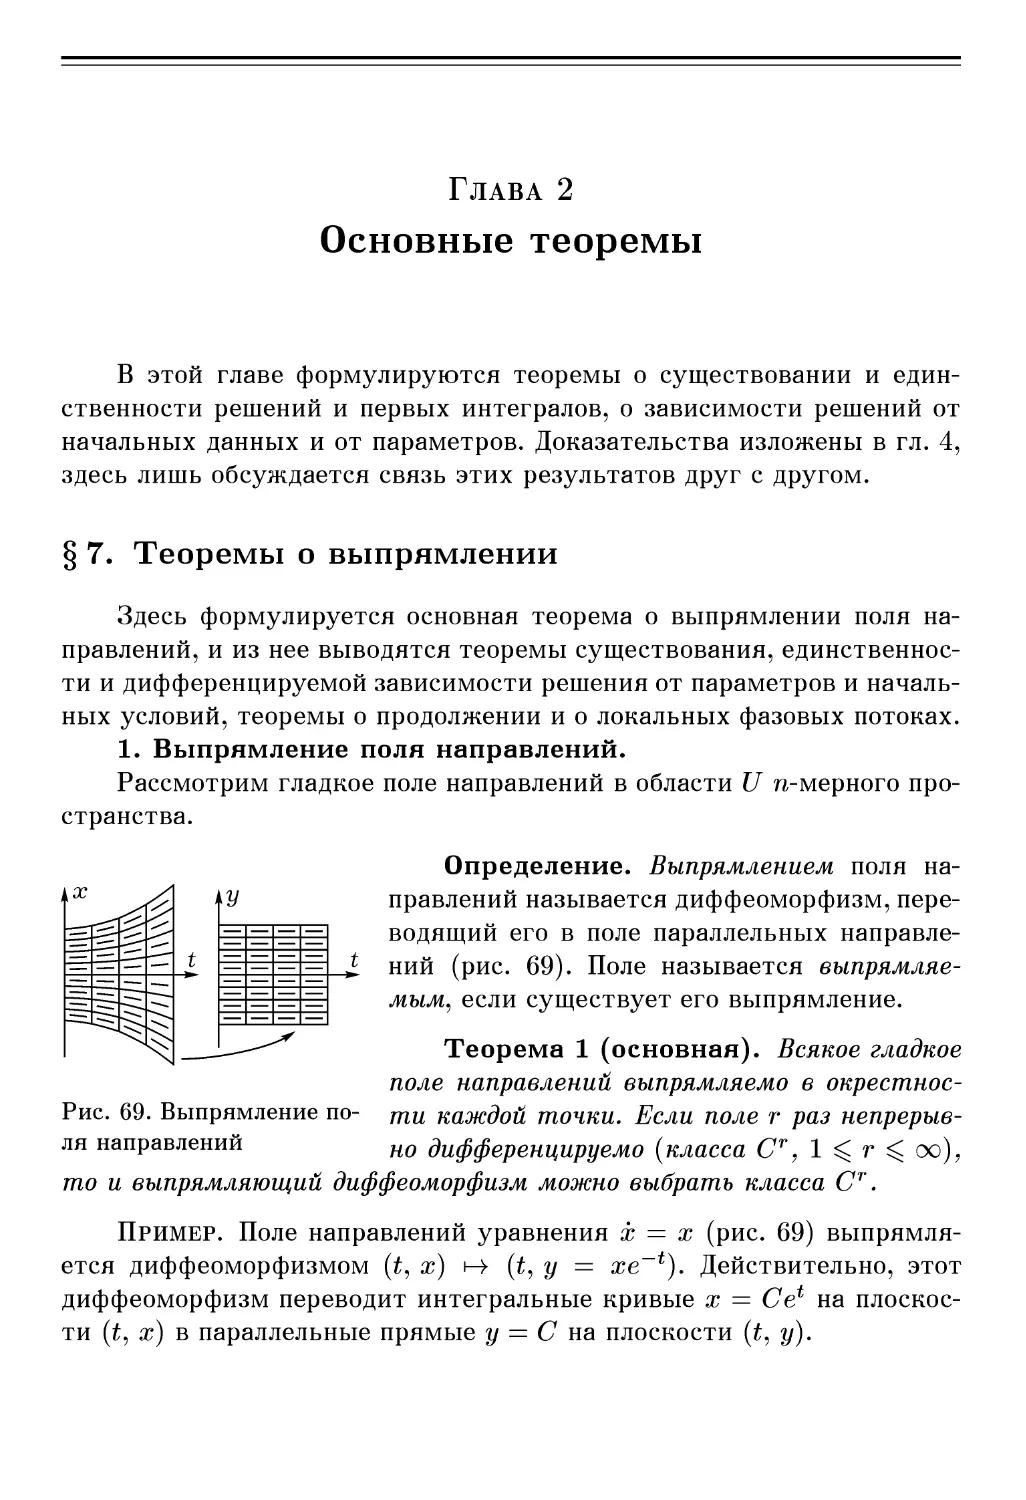 ГЛАВА 2. Основные теоремы